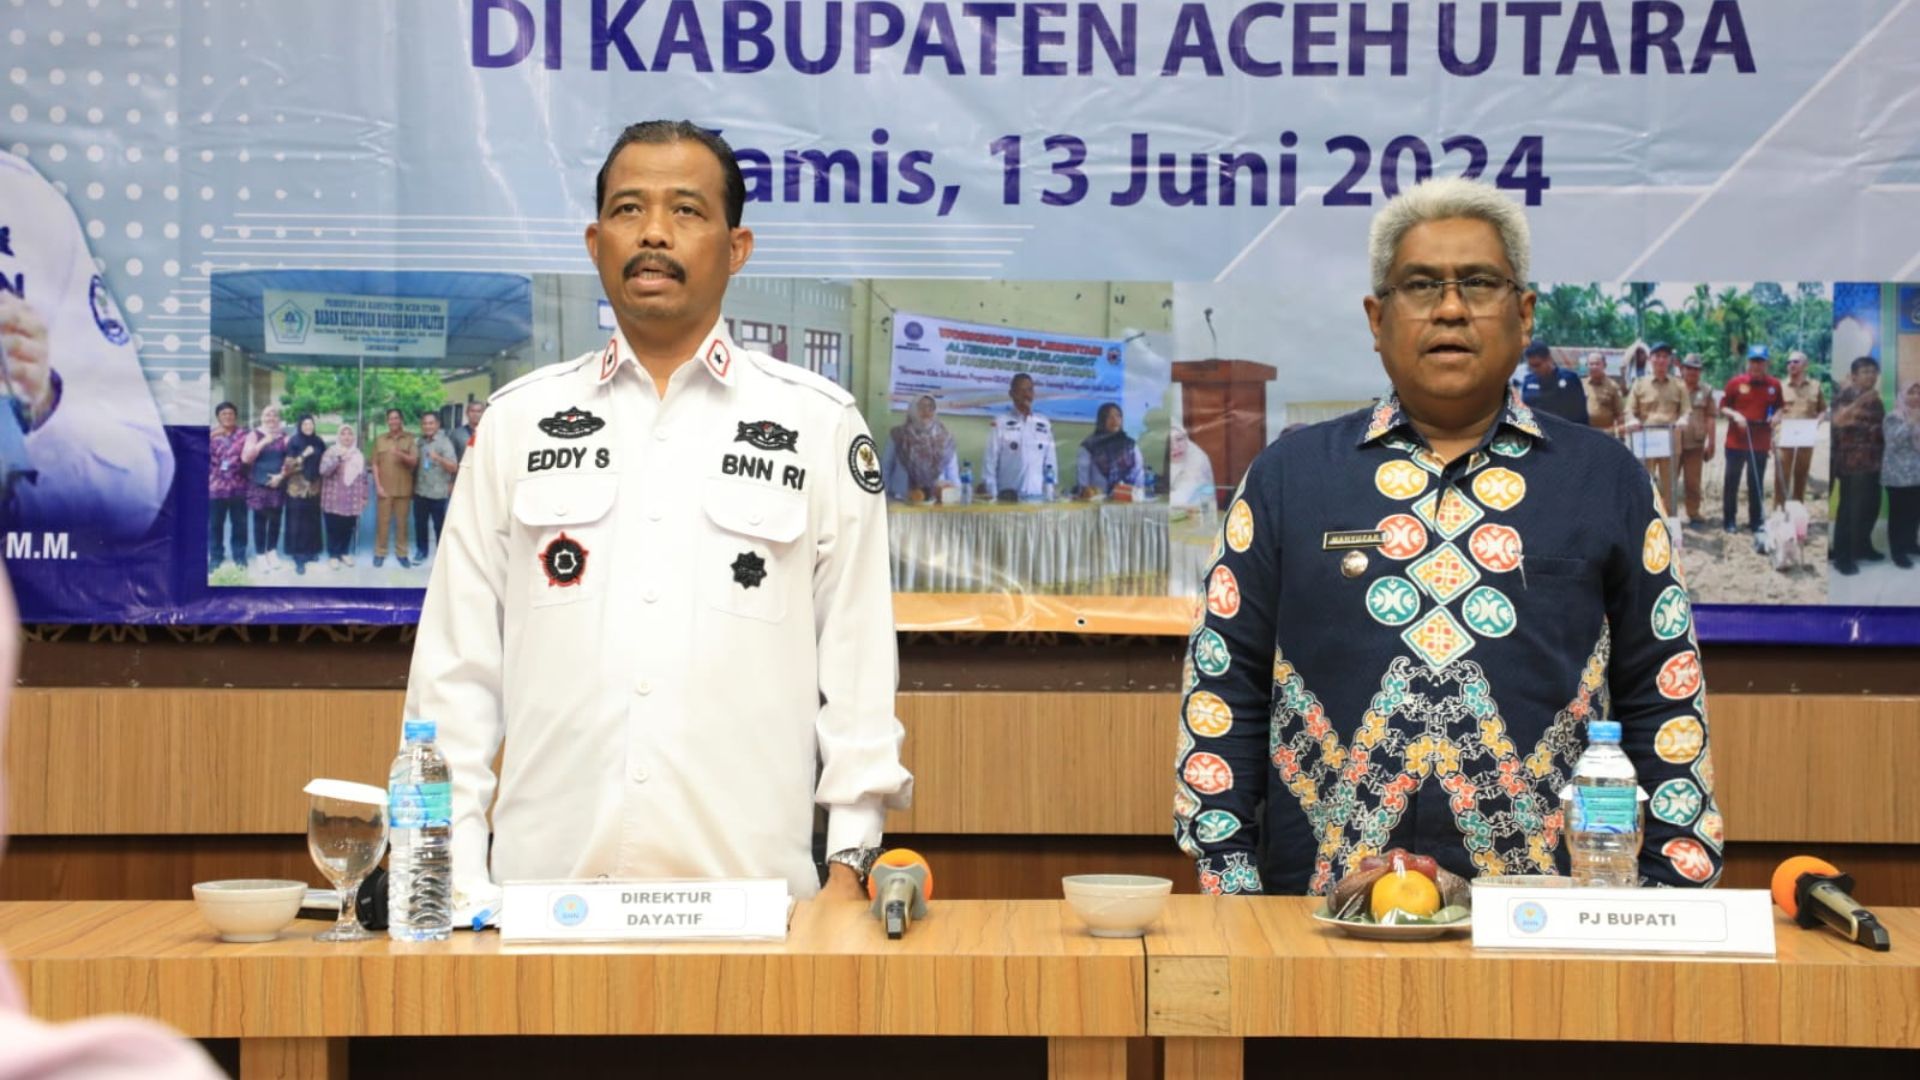 Pj Bupati Aceh Utara Apresiasi BNN dan Siap Dukung Pencegahan Narkoba